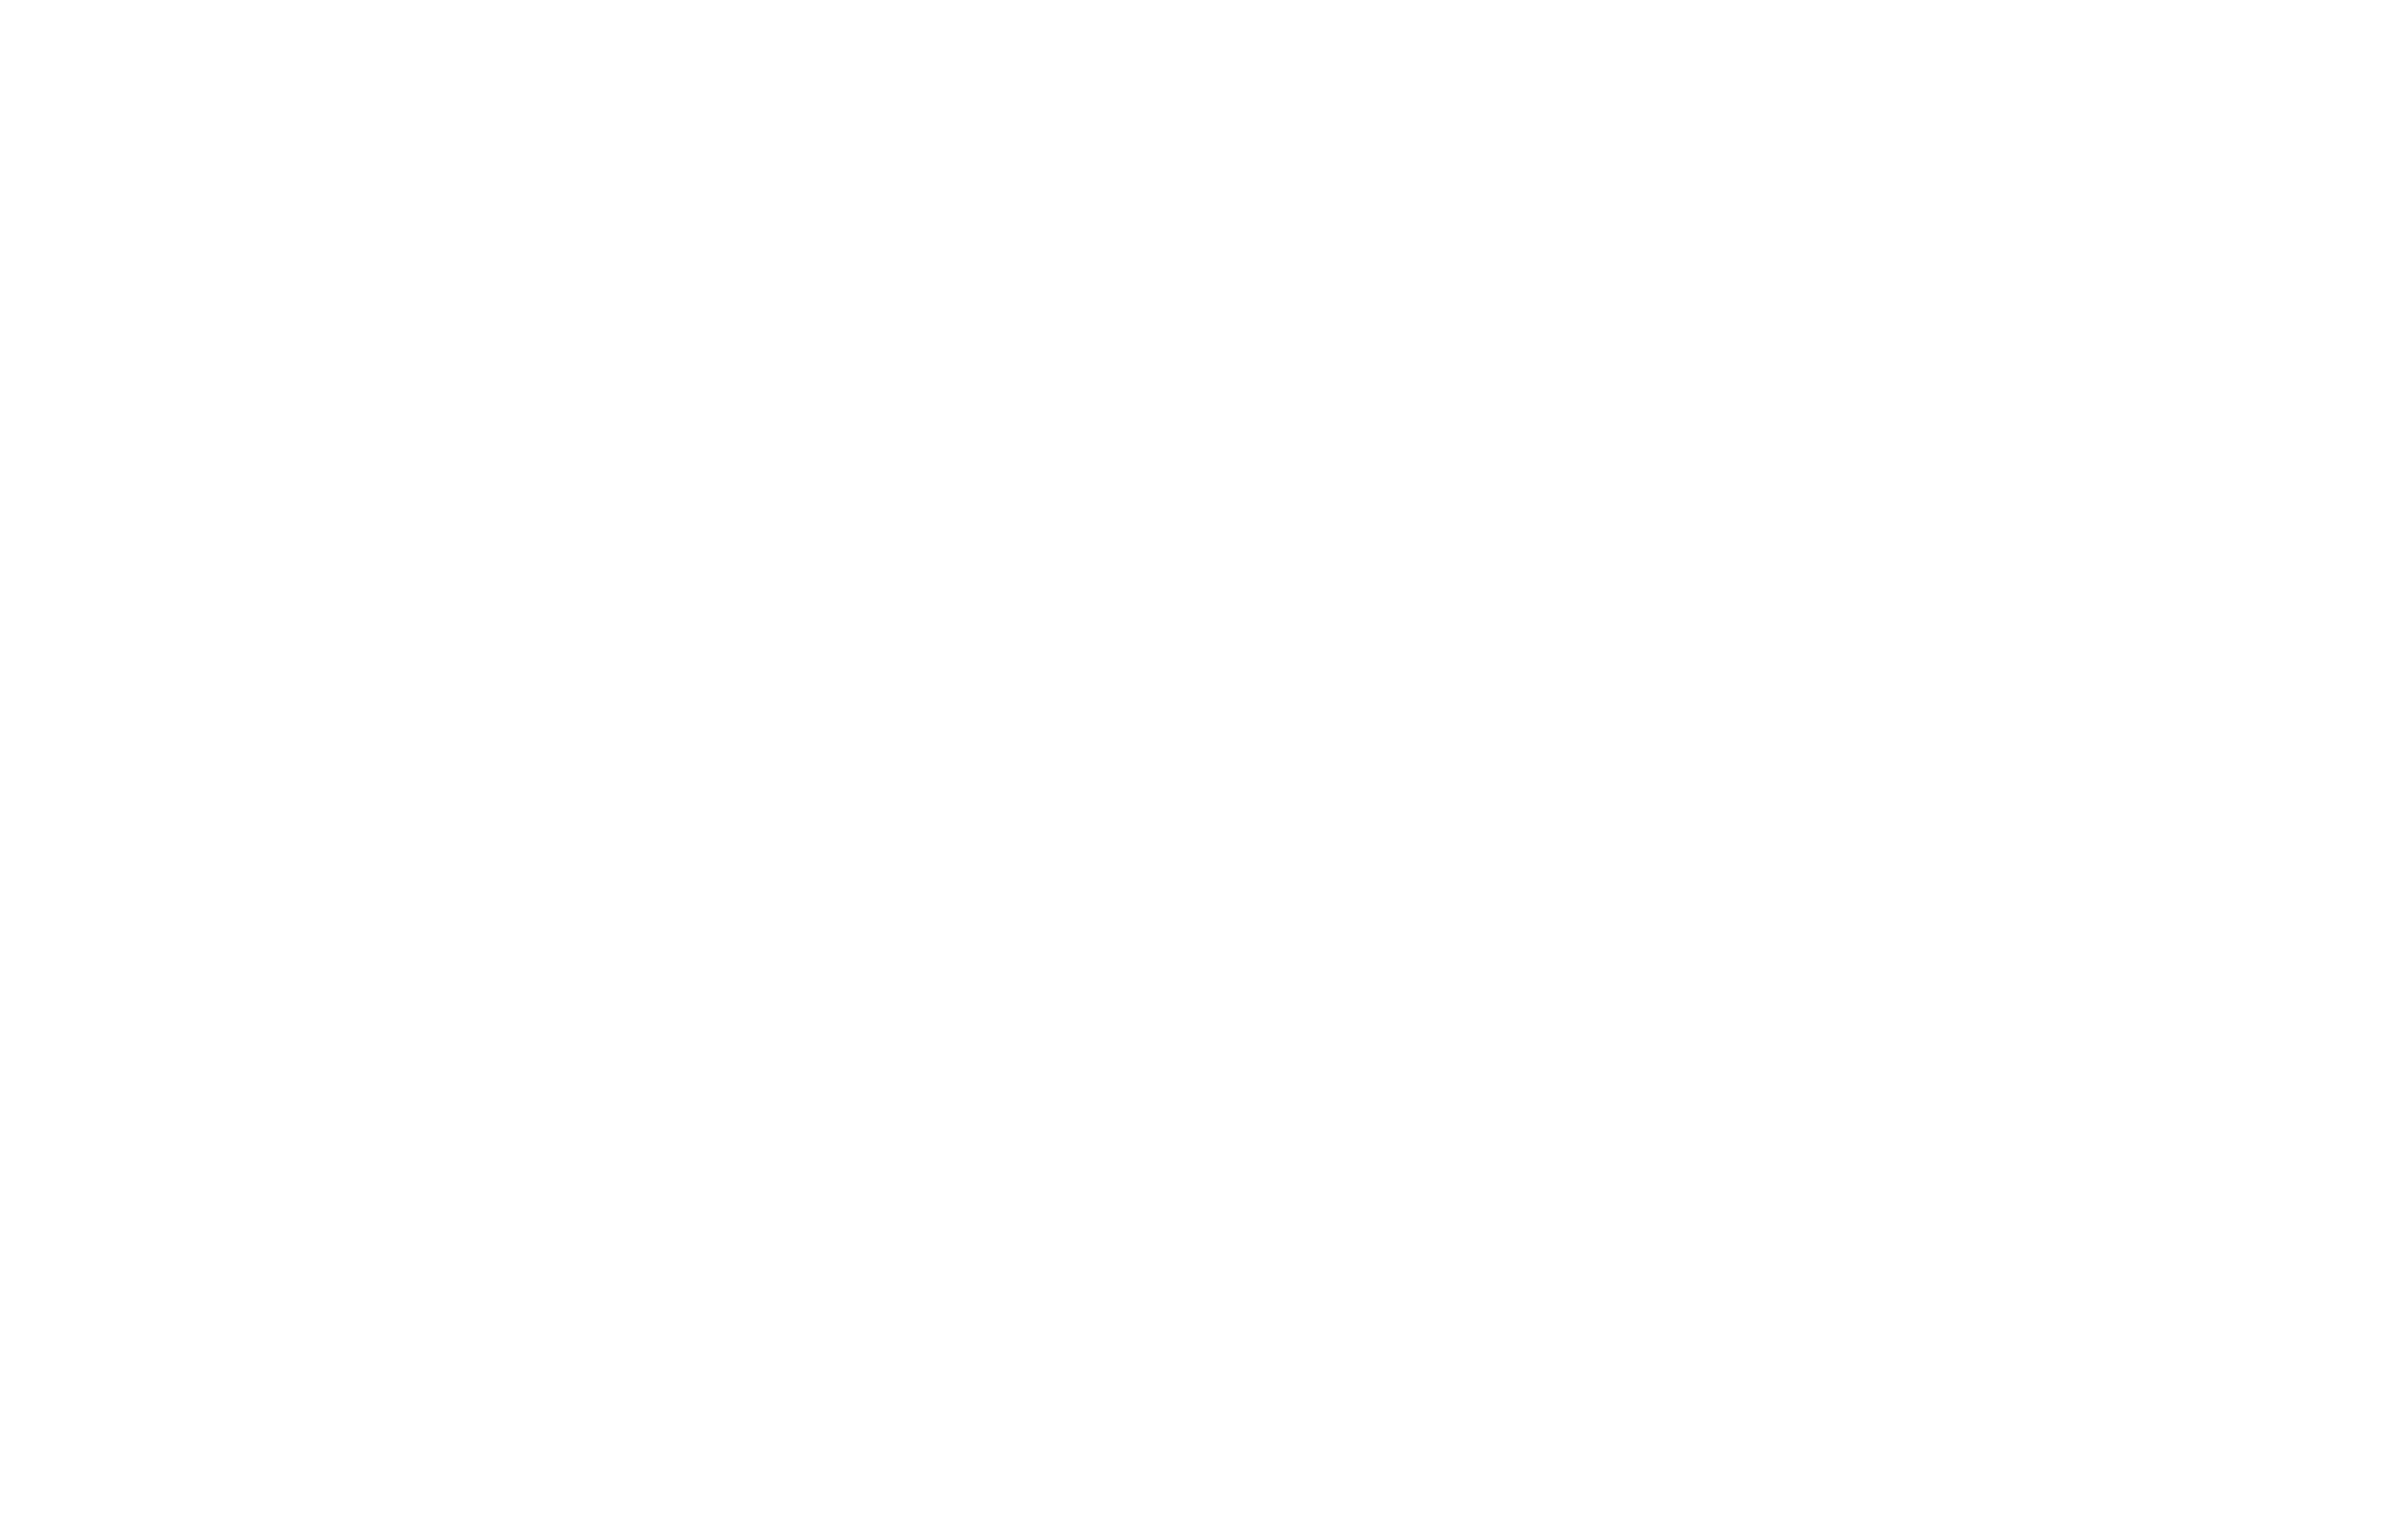 The American School of Las Palmas